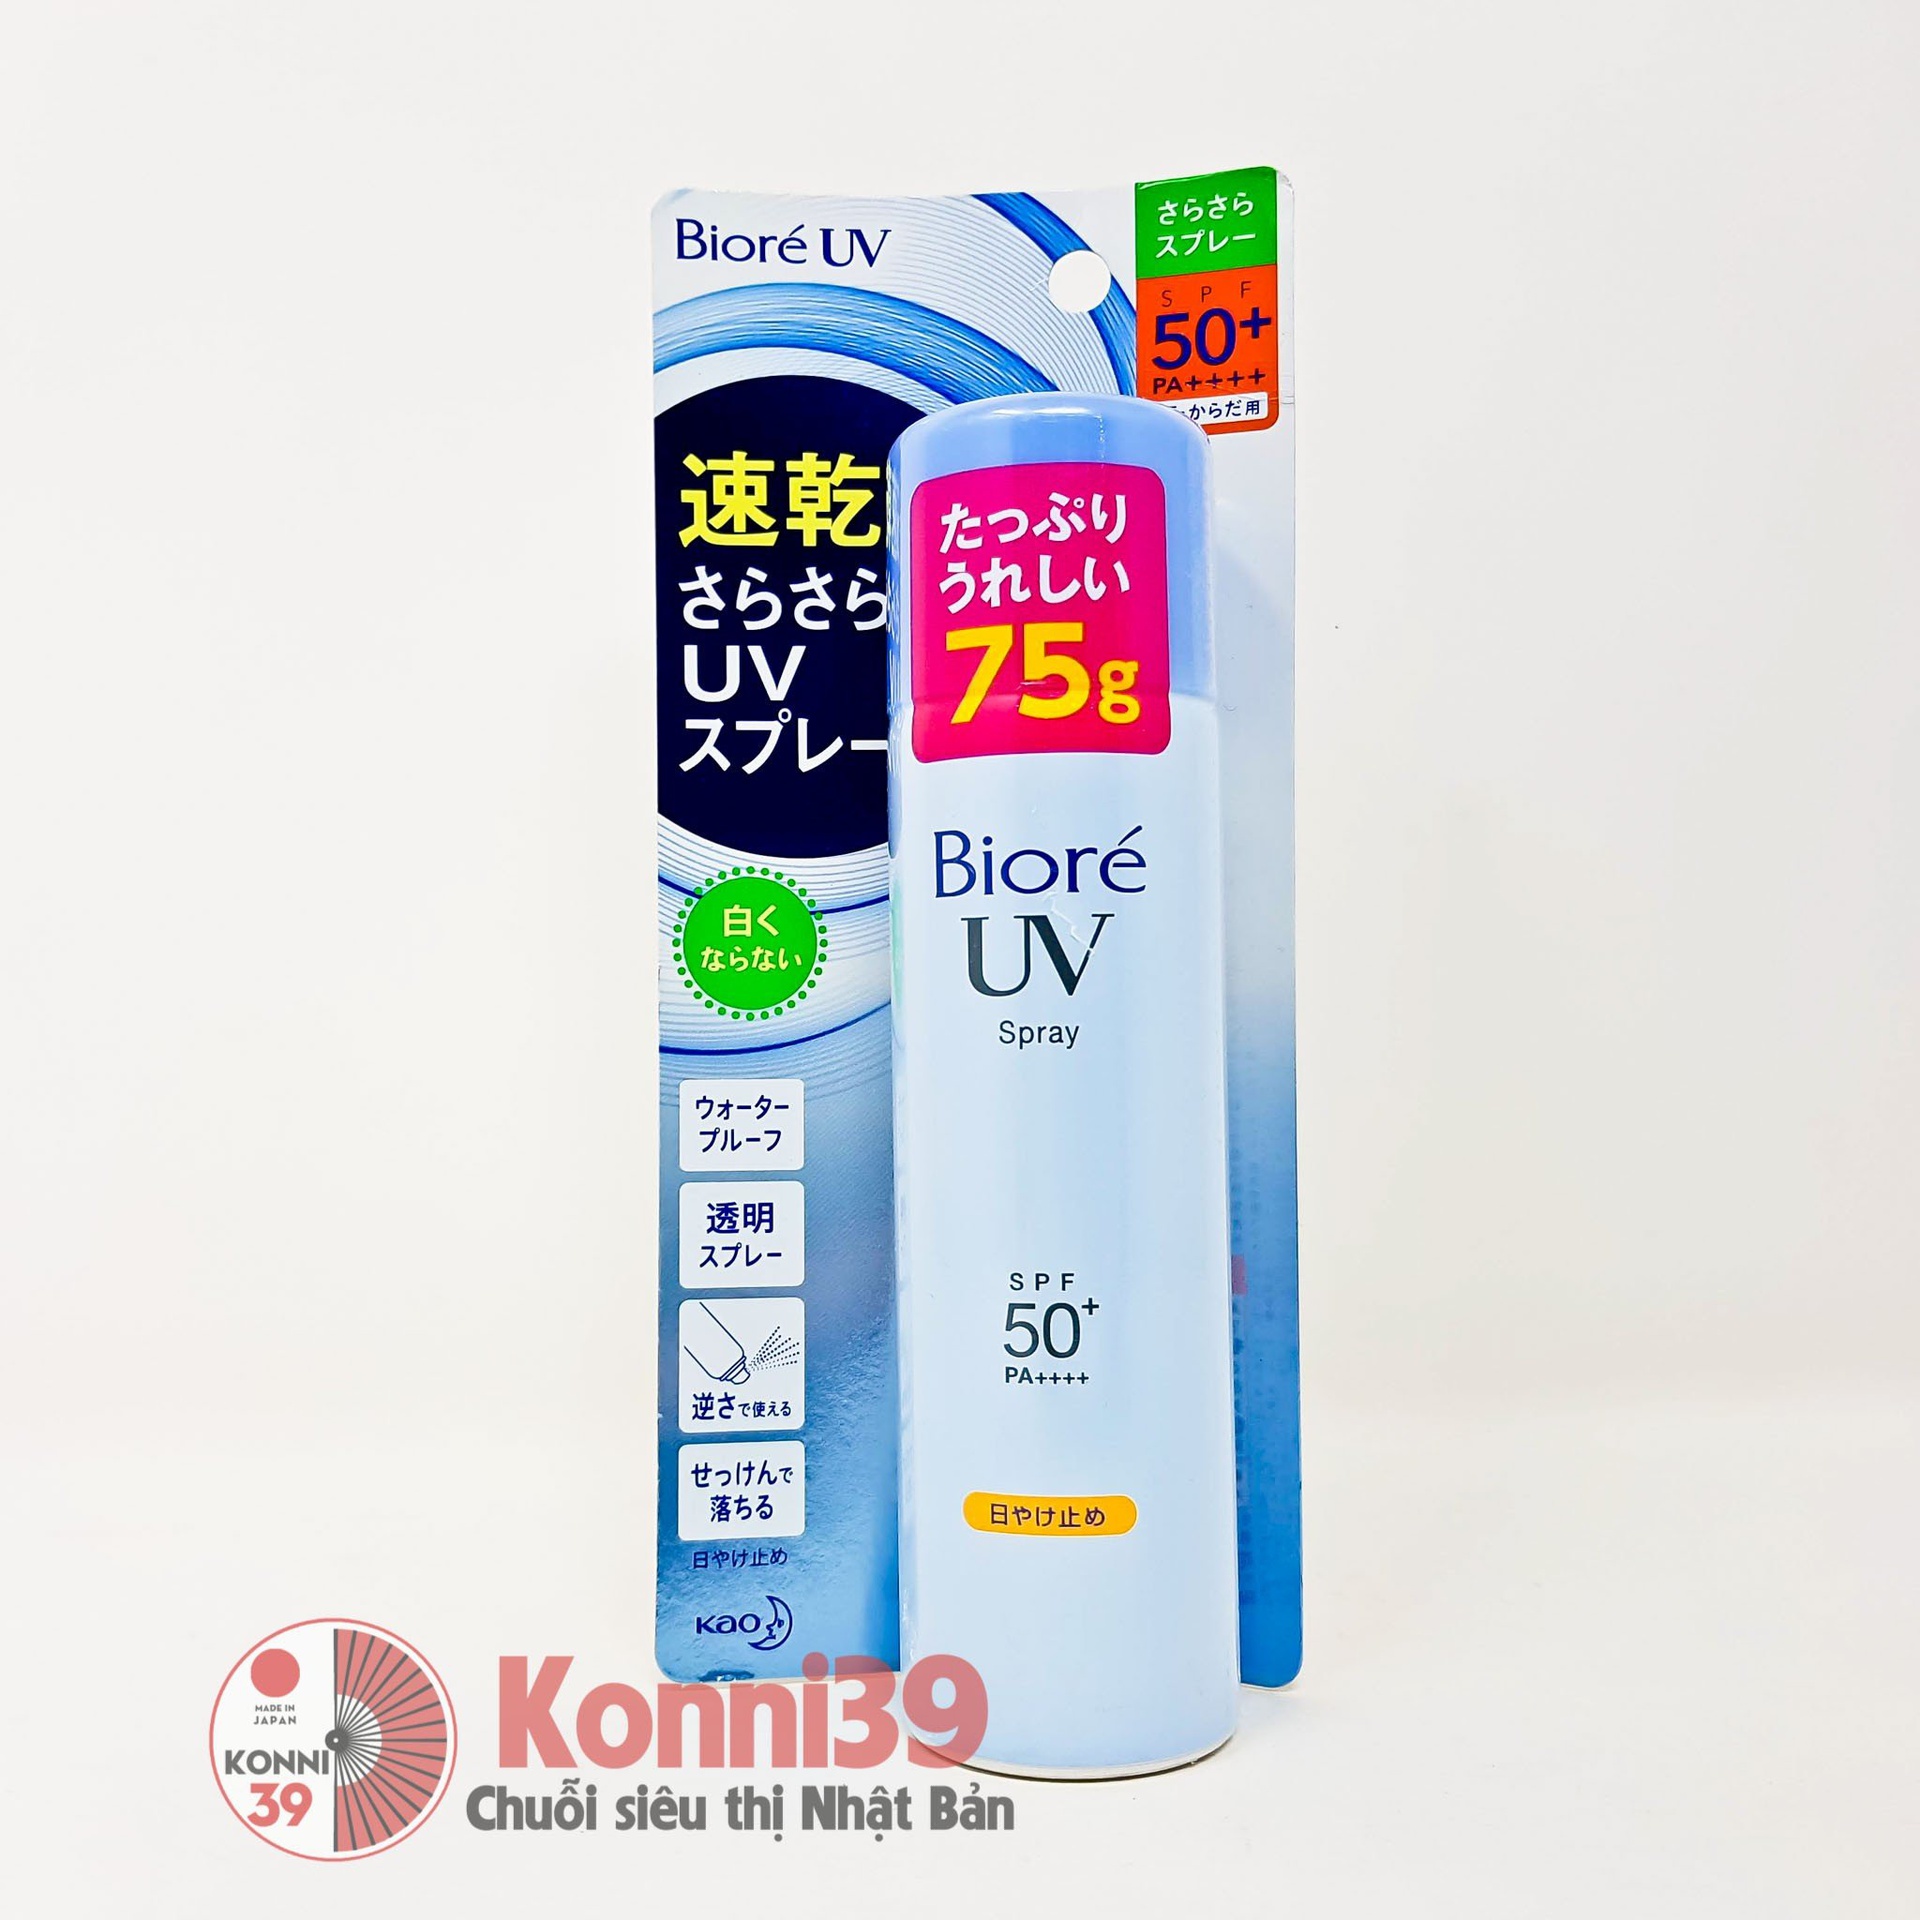 Xịt chống nắng Biore UV Spray SPF50+PA++++ 75g